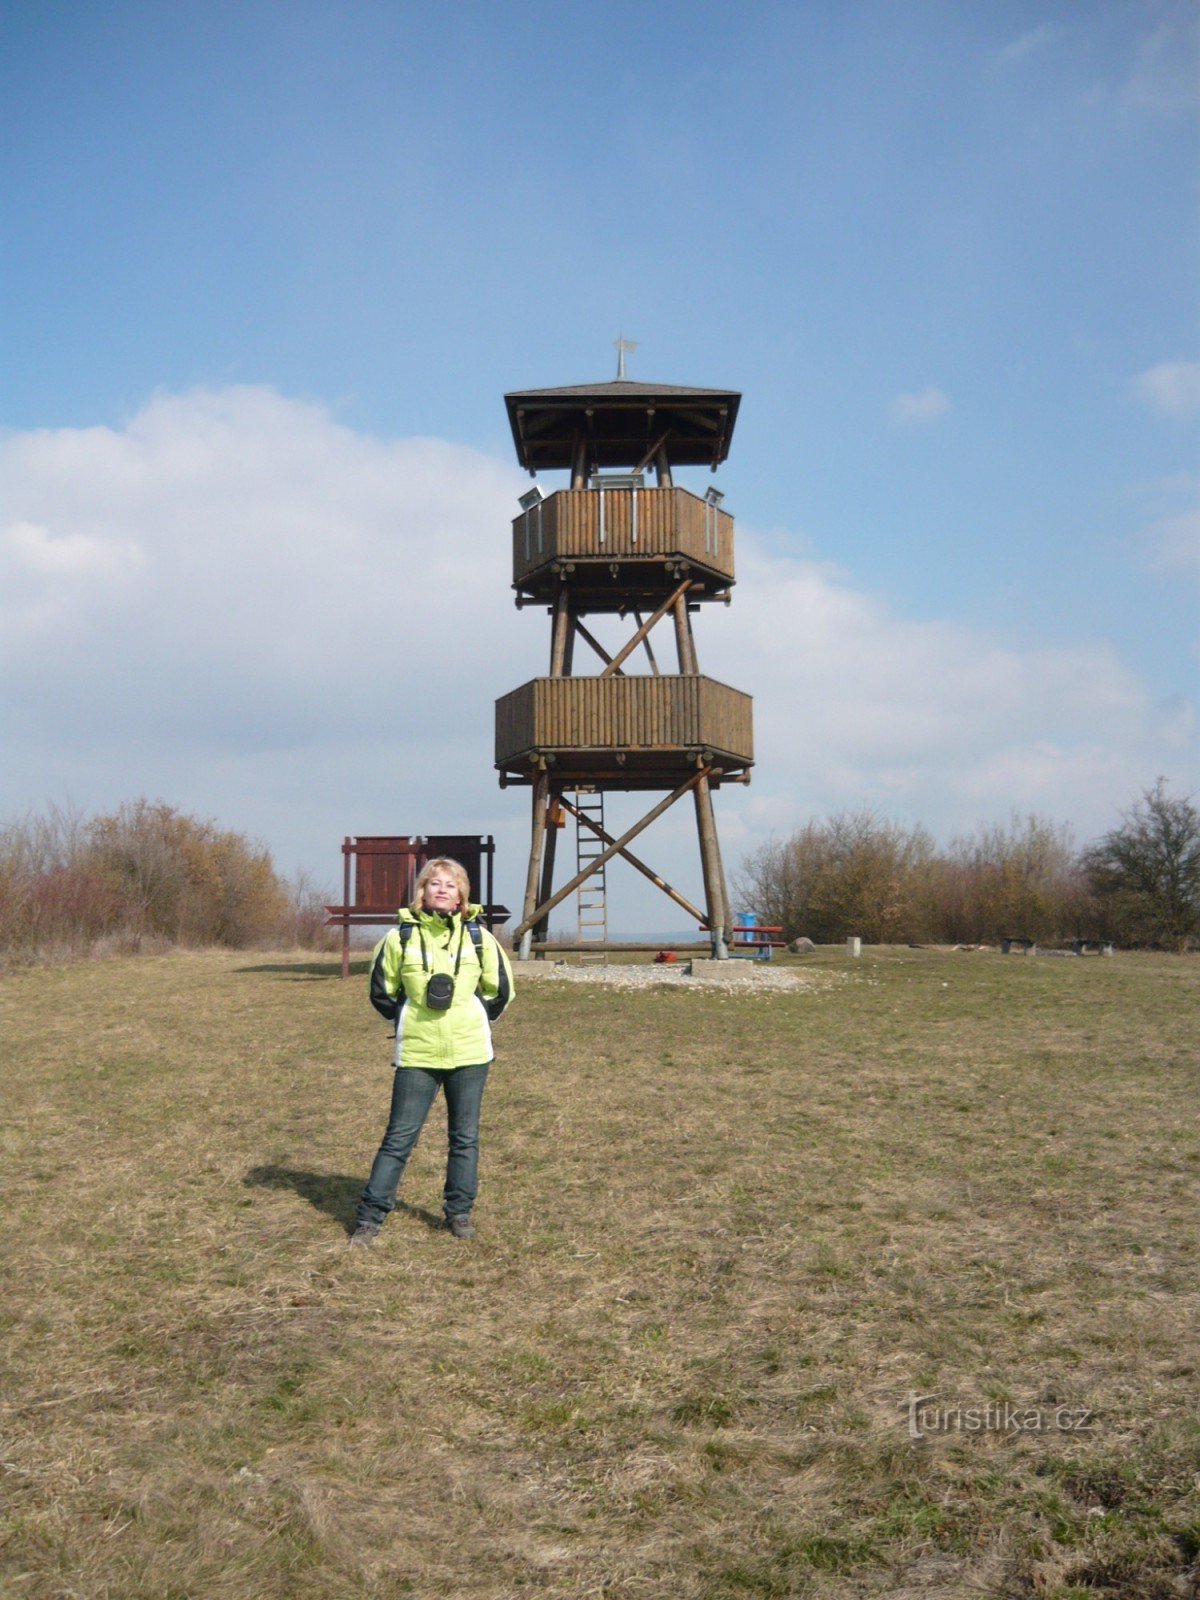 Torre de observação de Malý Chlum